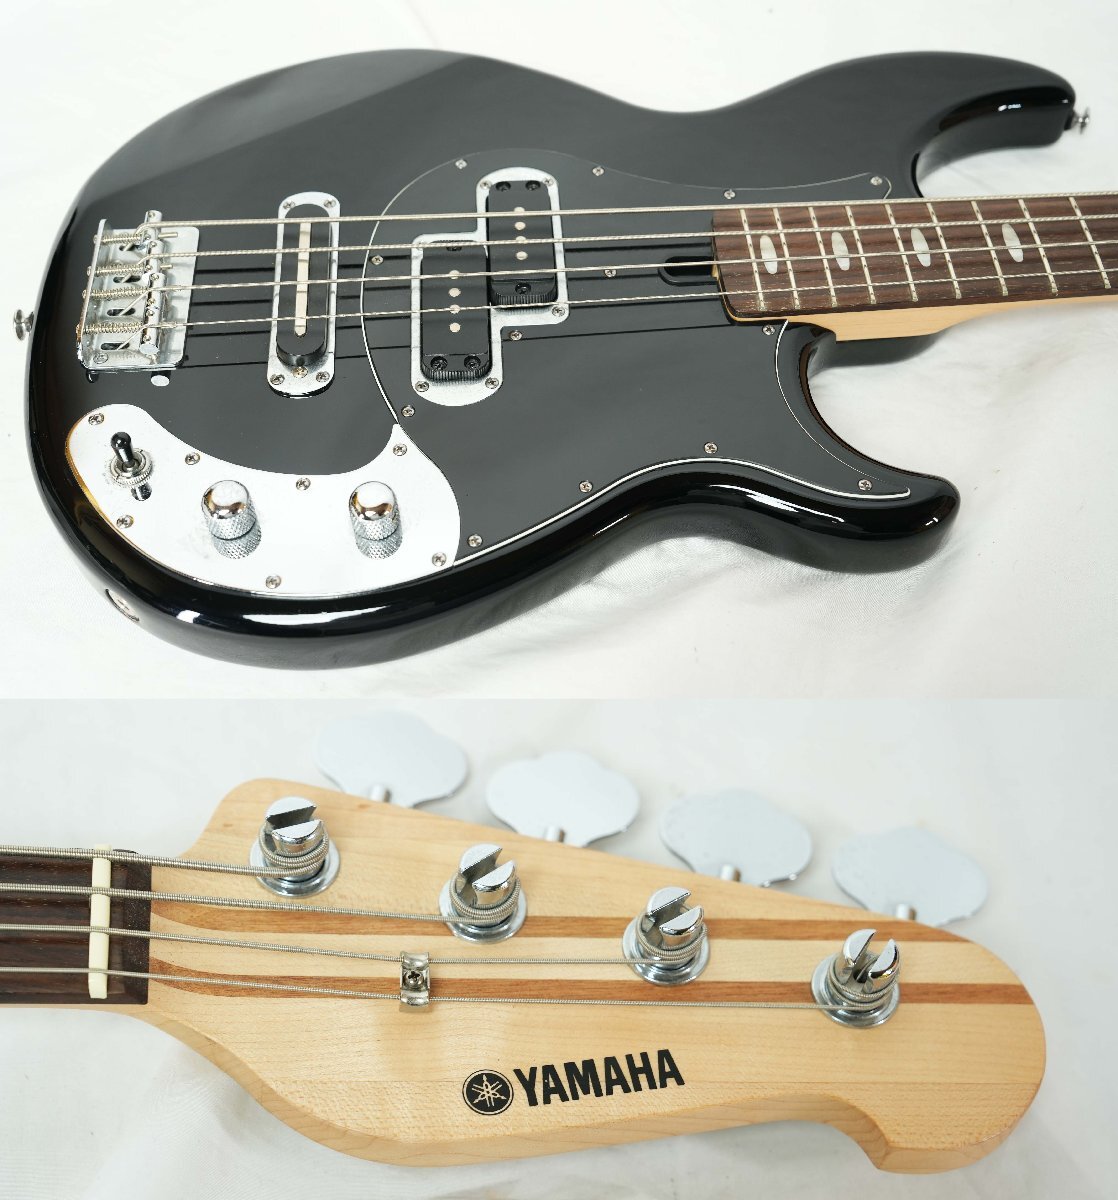 *YAMAHA*BB424X BL Broad Bass 4 струна основа Yamaha современная модель прекрасный товар *